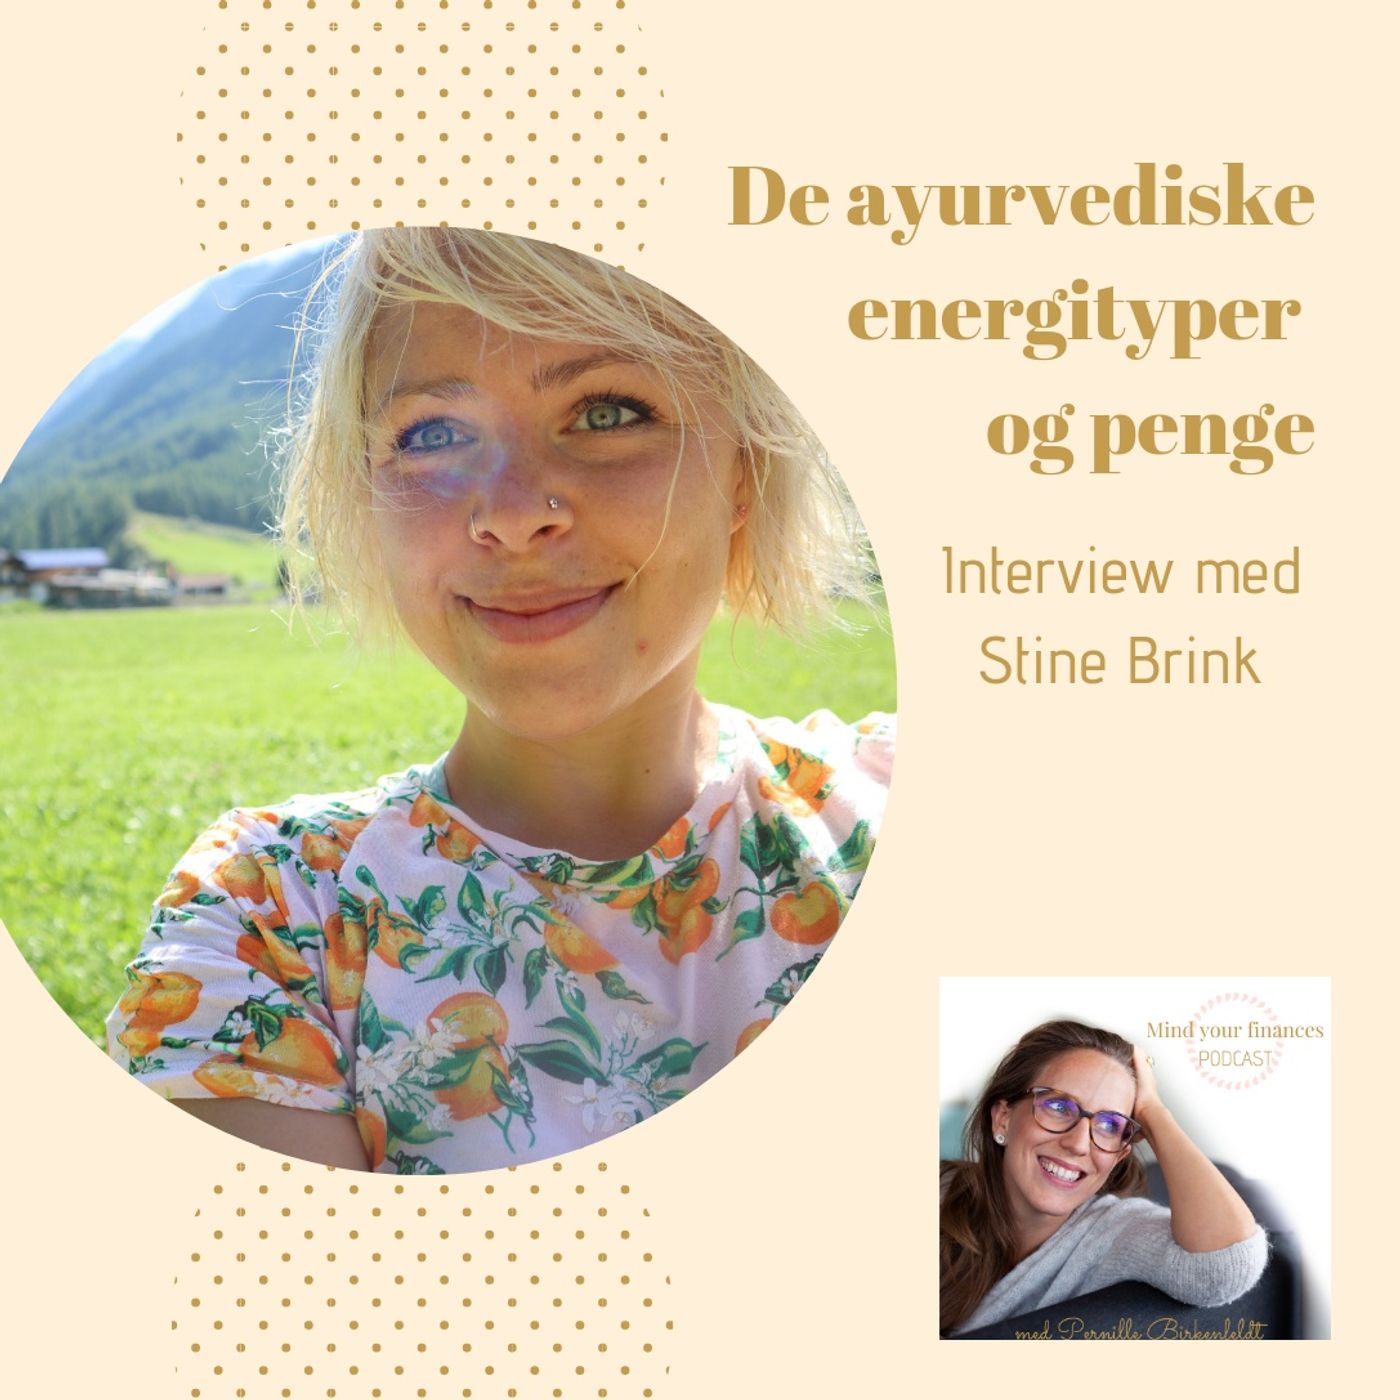 De ayurvediske energityper og penge - interview med Stine Brink